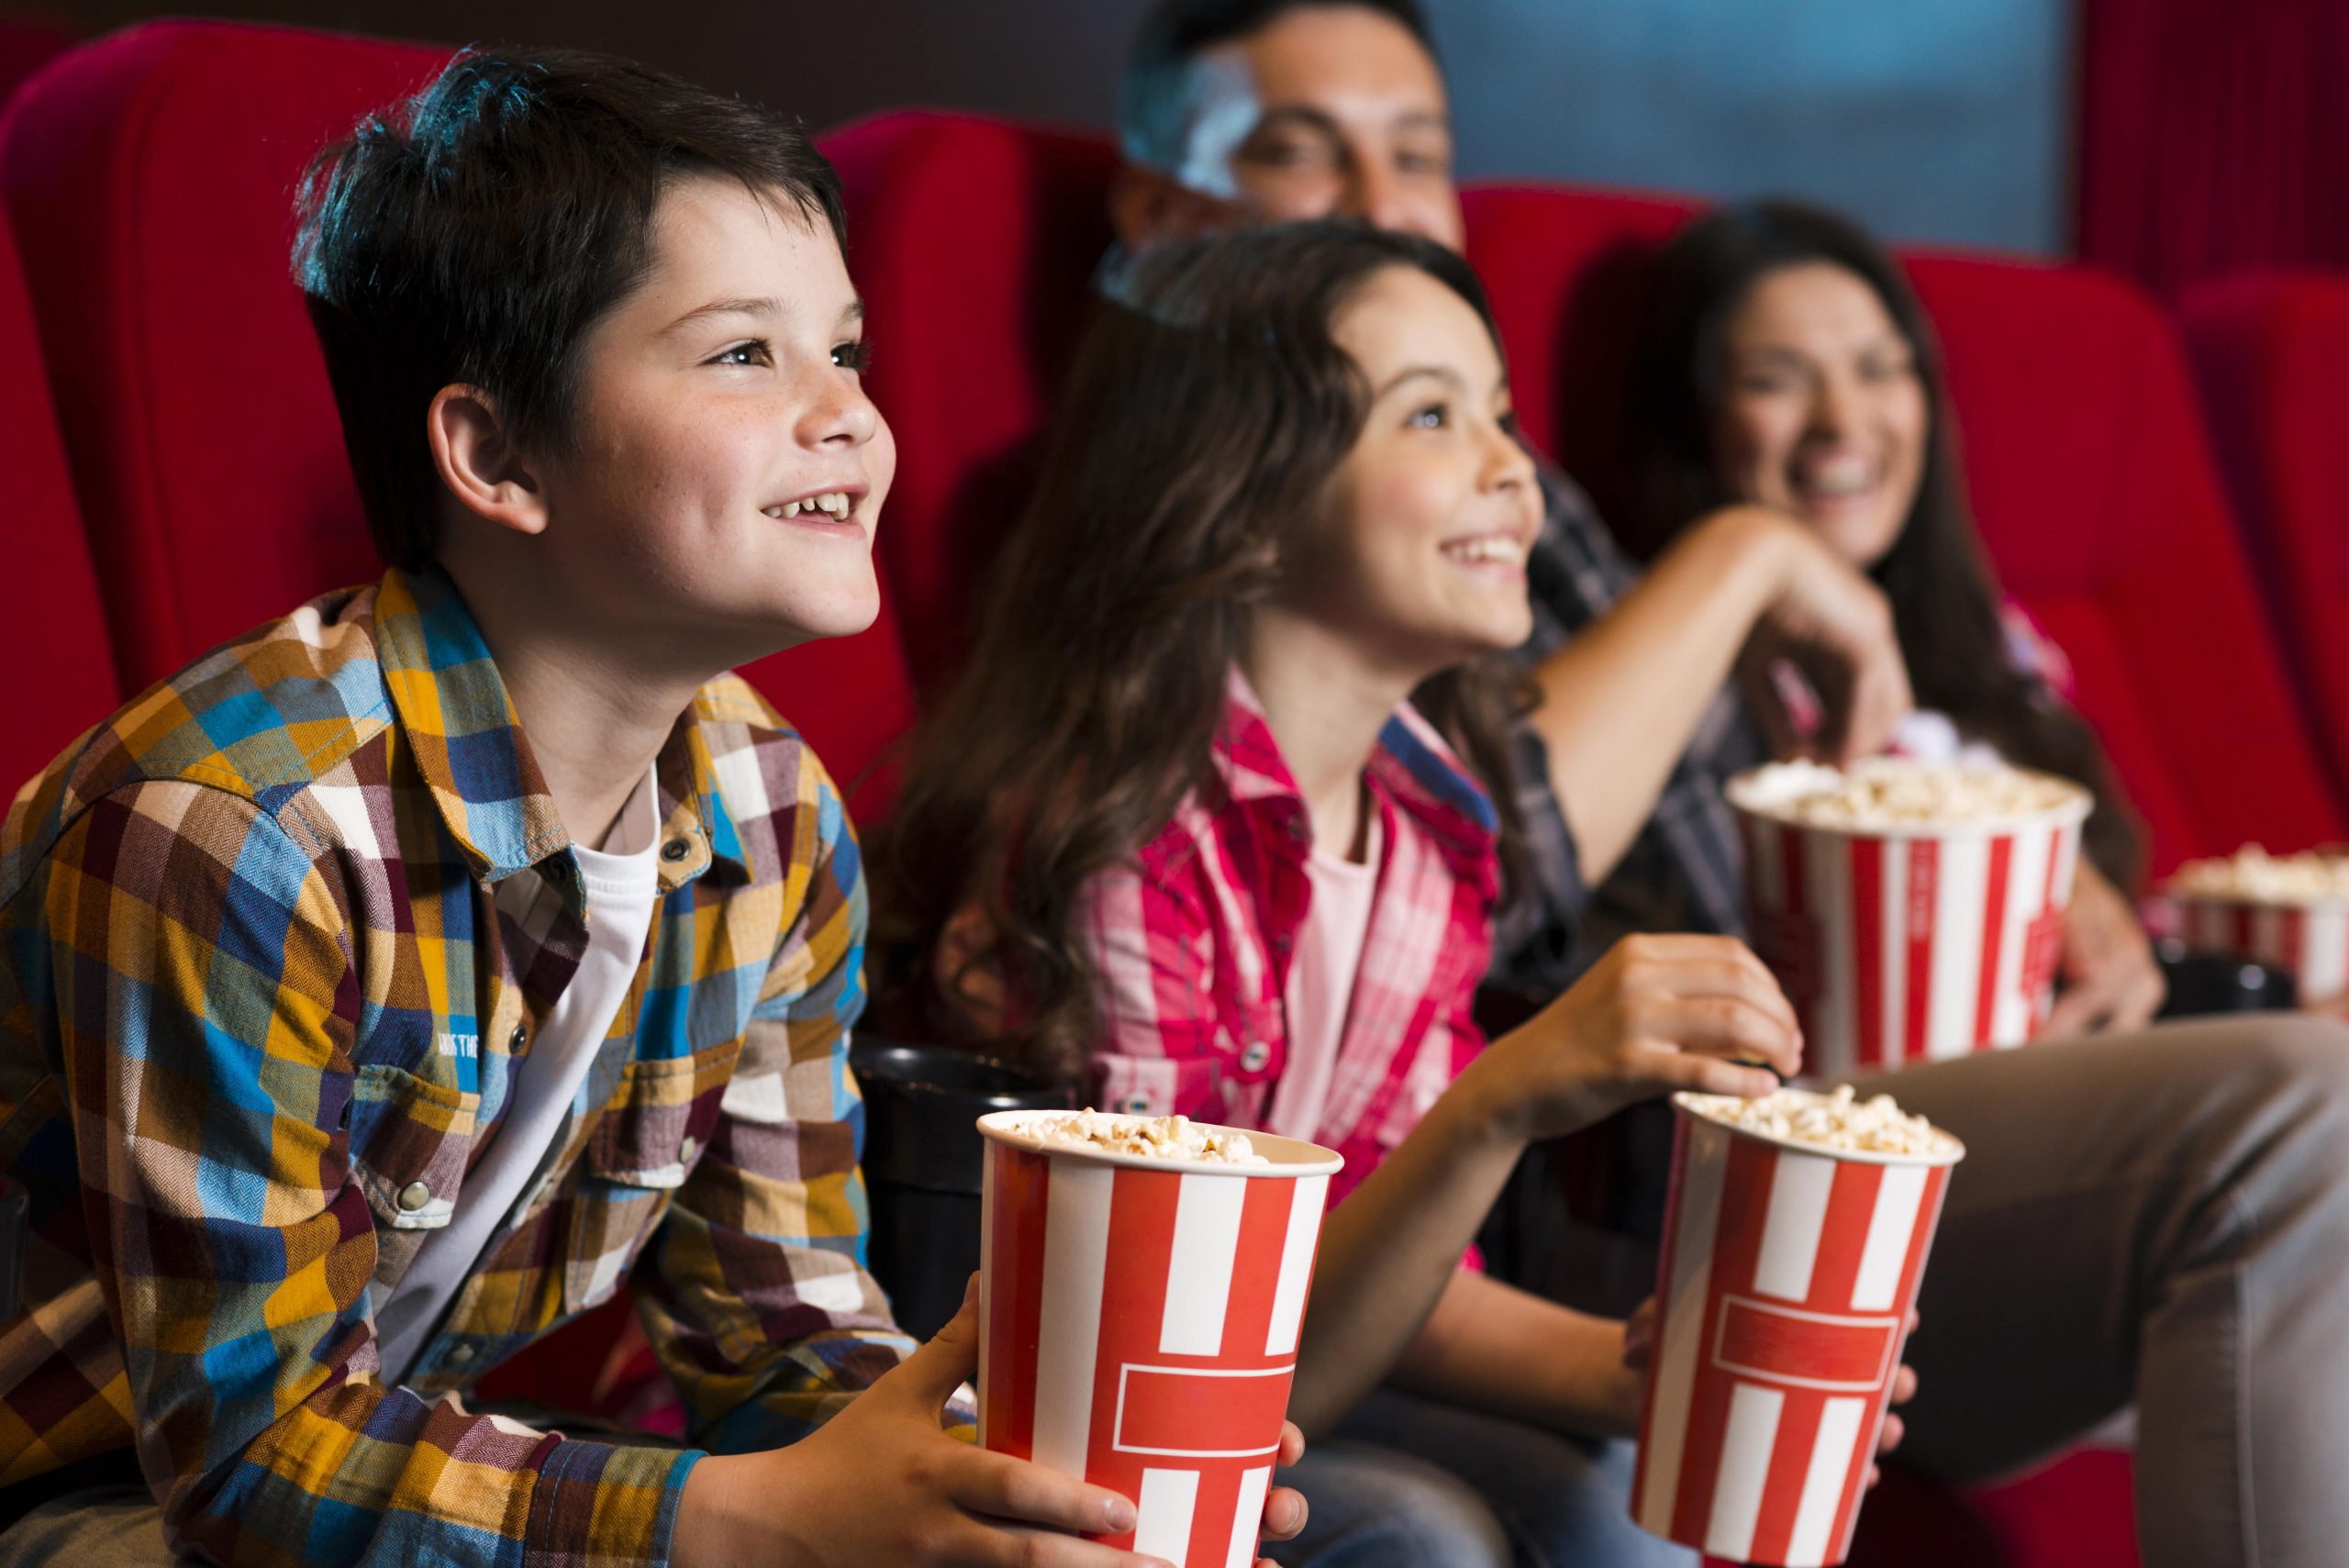 Watch movie s. Дети в кинотеатре. Дети в кинотеатре с попкорном. Поход в кинотеатр. Подростки в кинотеатре с попкорном.